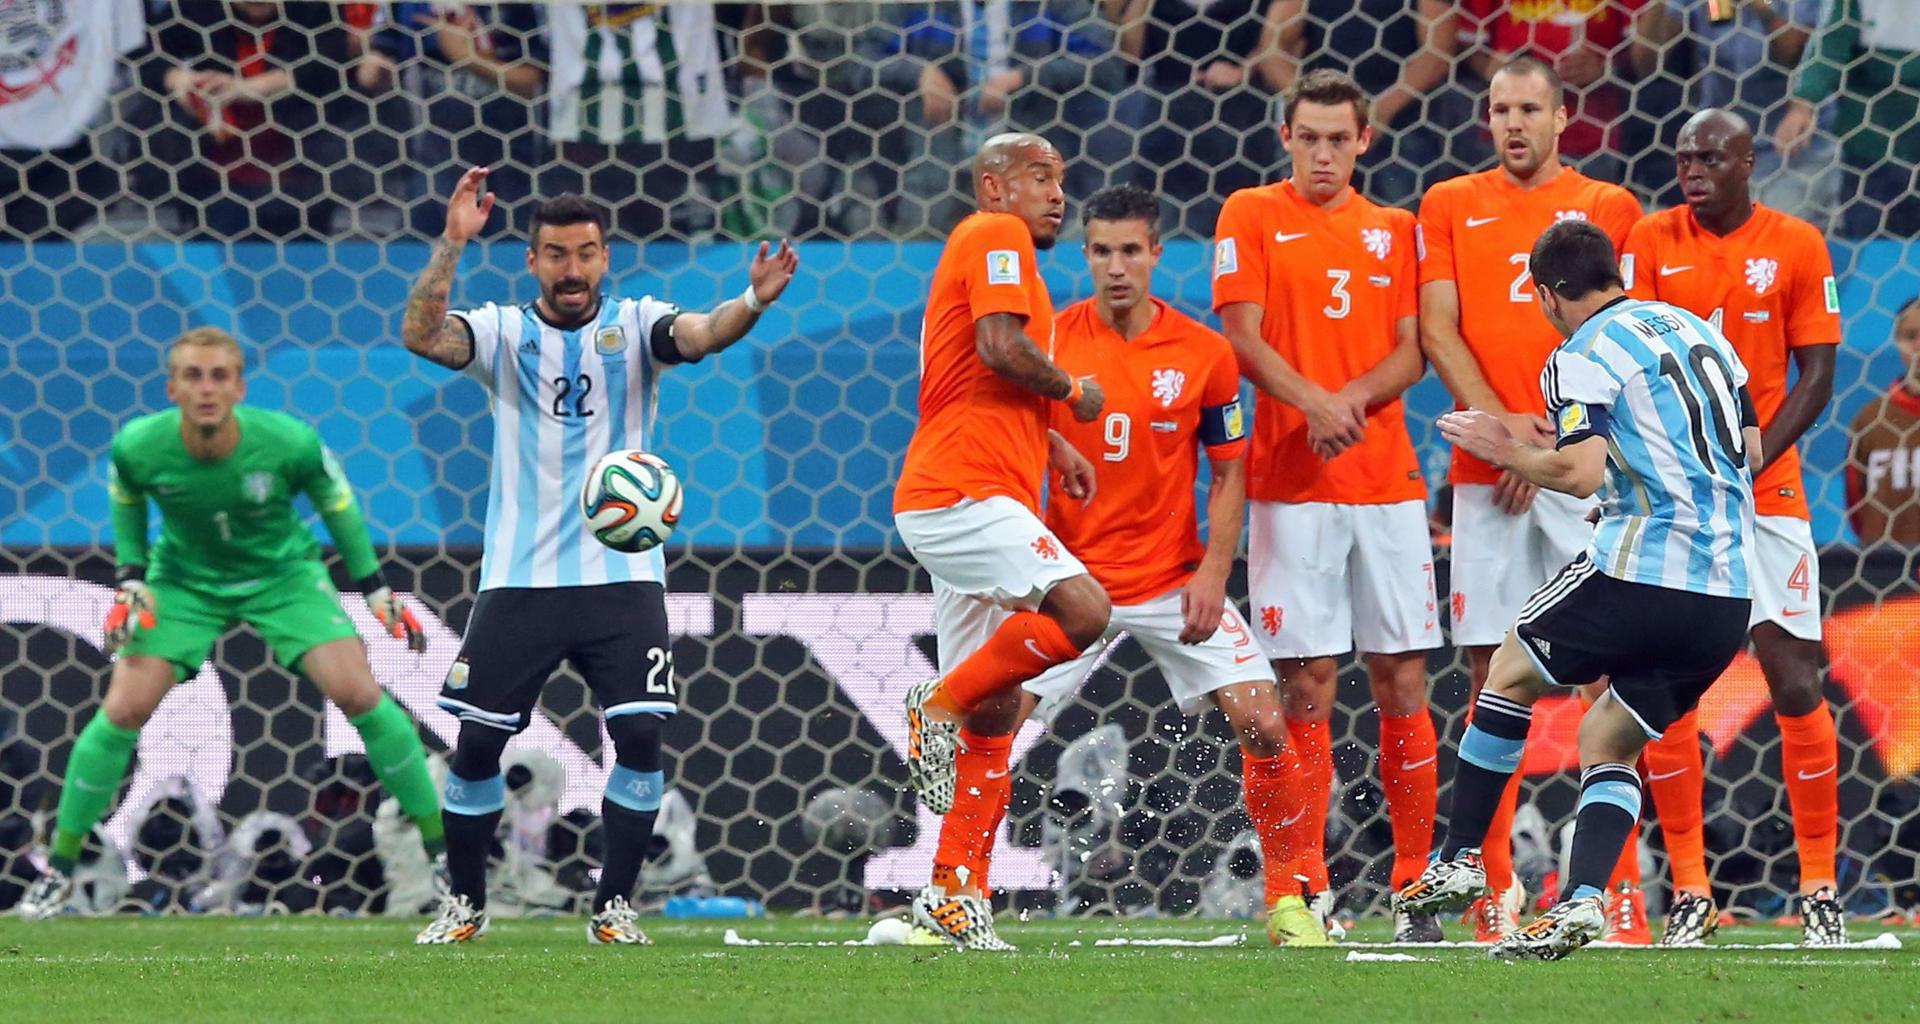 Semifinal de la Copa del Mundo 2014 disputada entre Argentina y Países Bajos